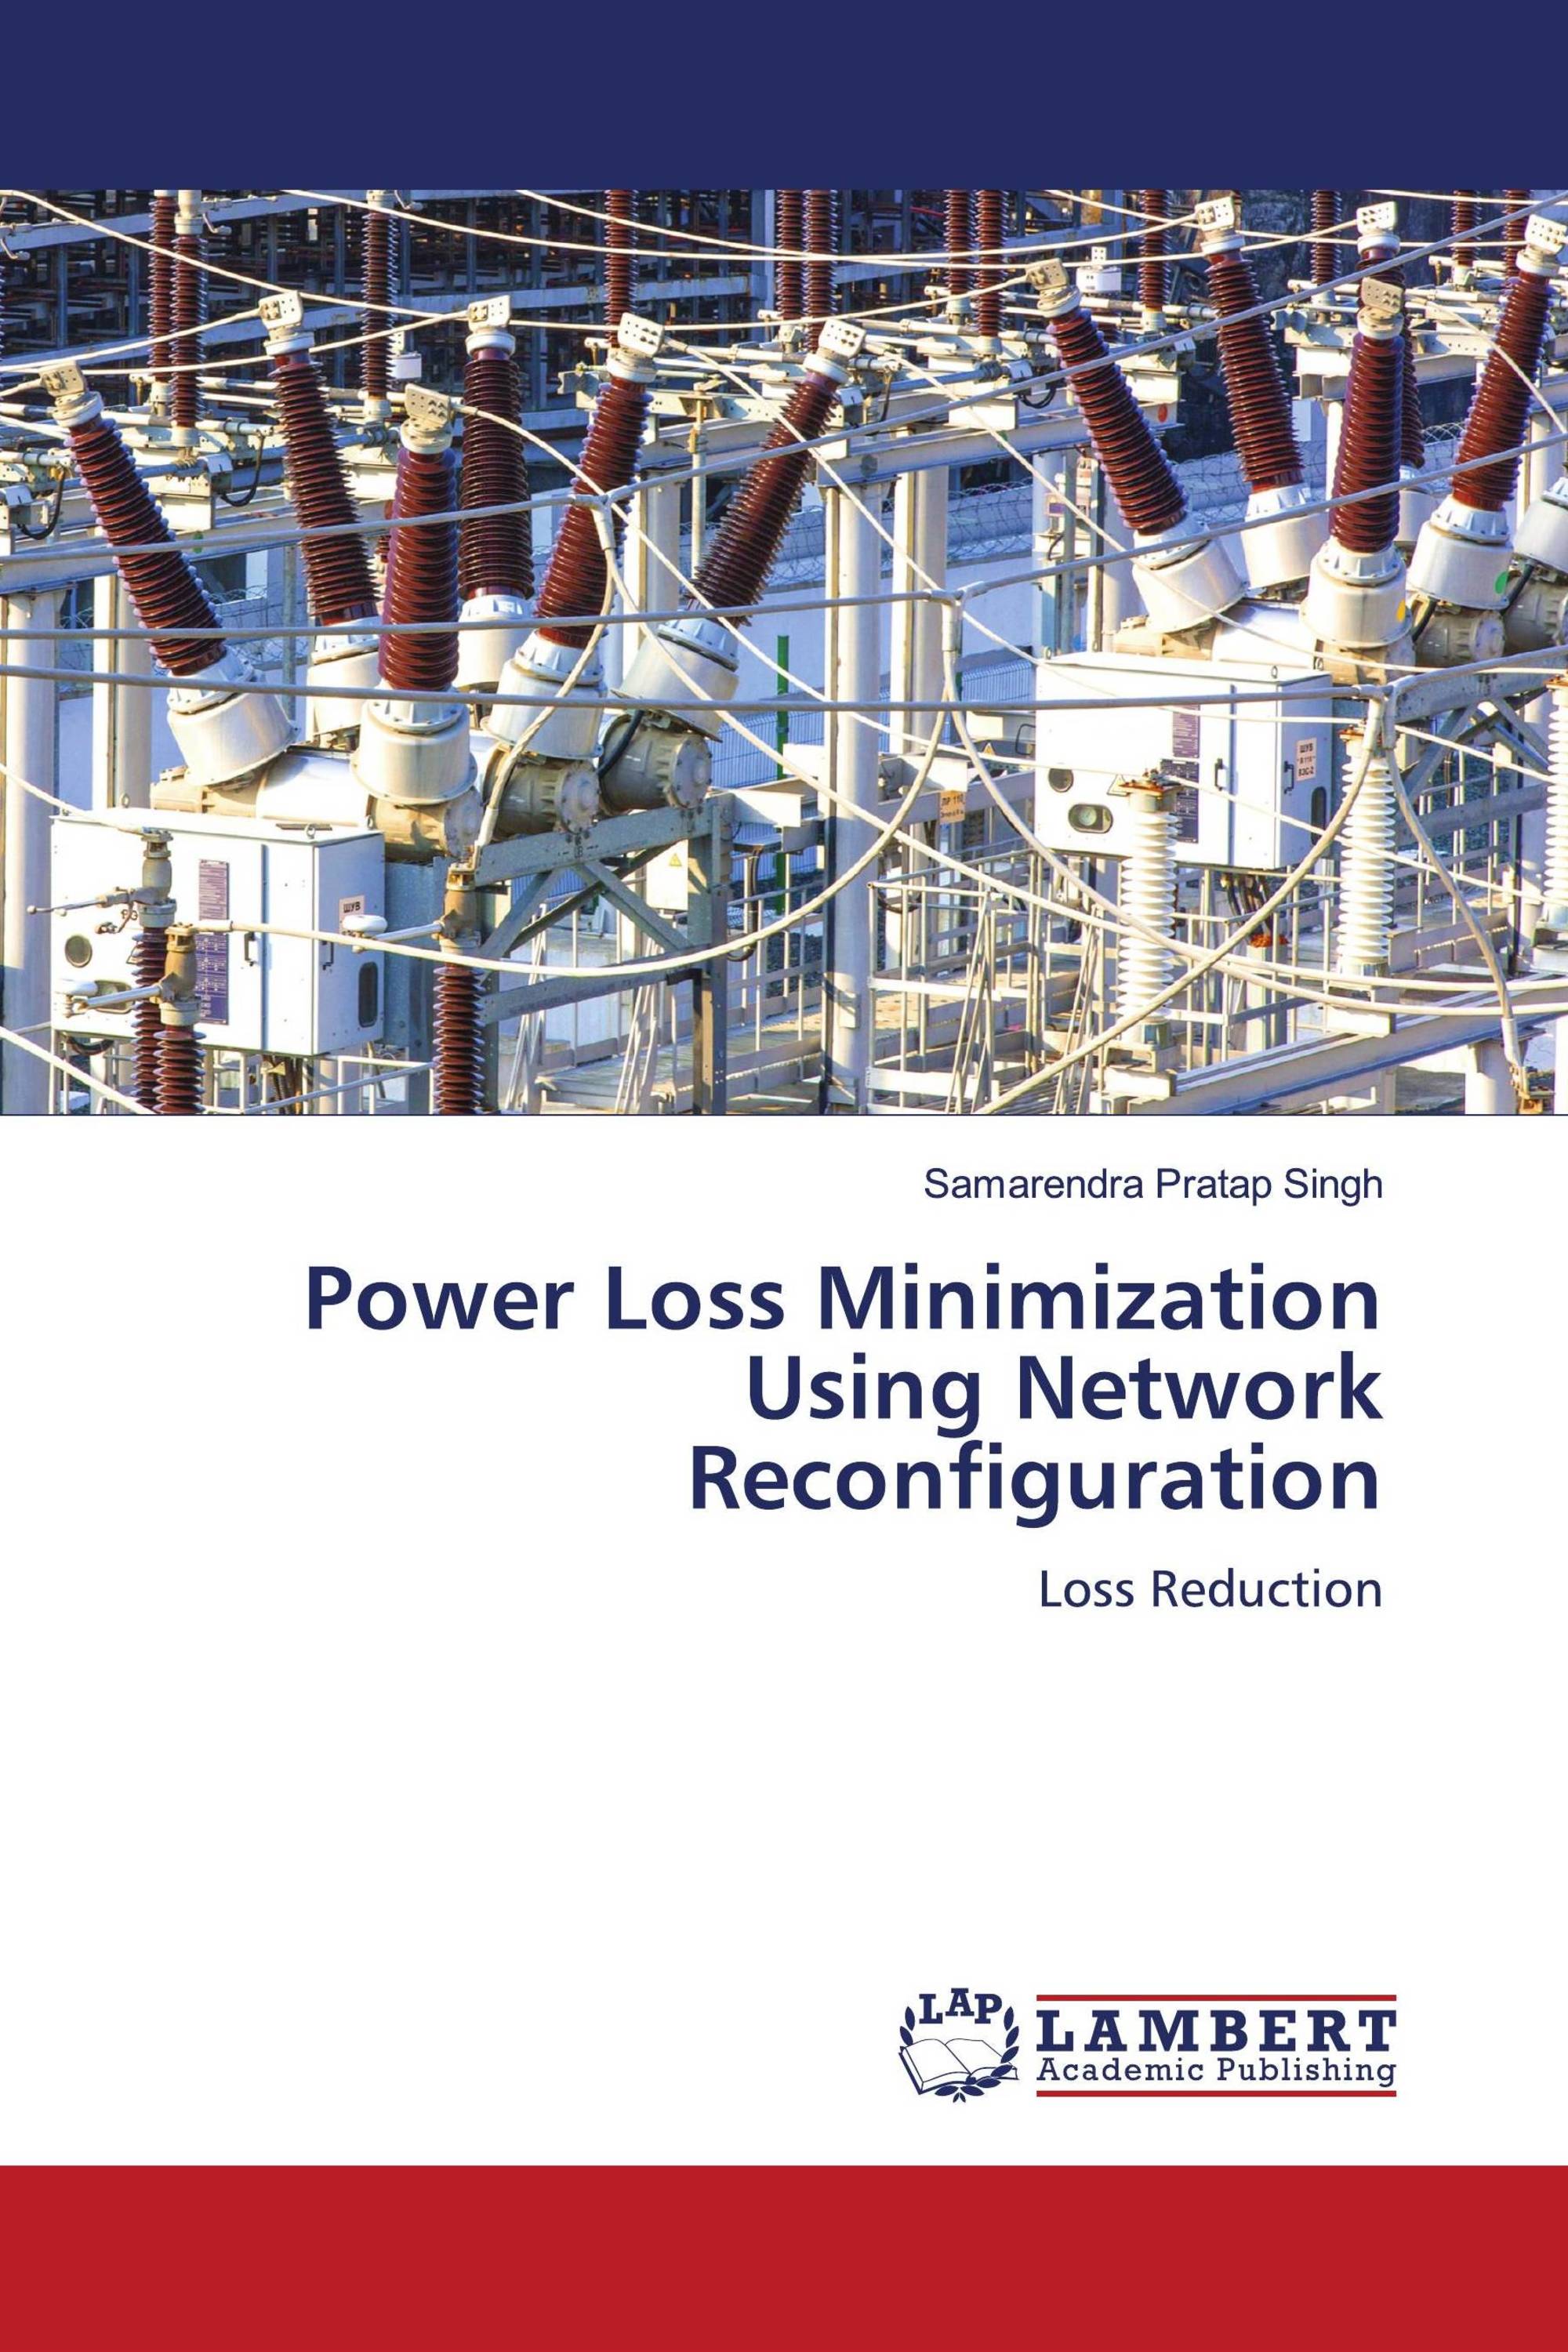 Power Loss Minimization Using Network Reconfiguration